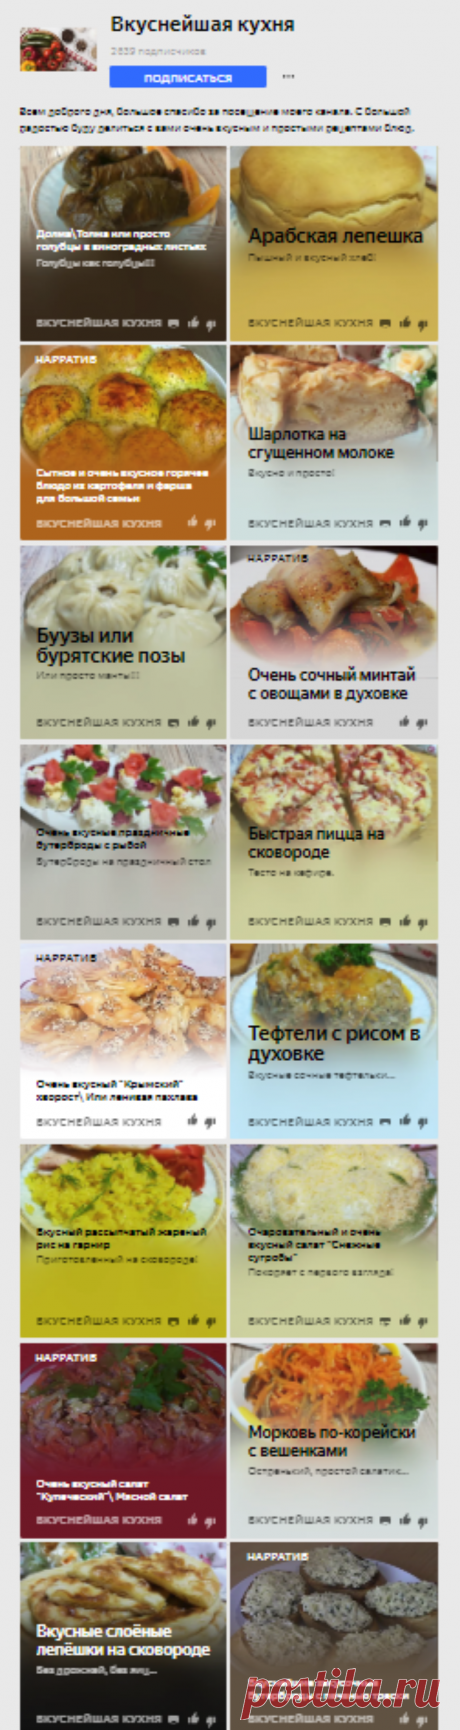 Вкуснейшая кухня | Яндекс Дзен